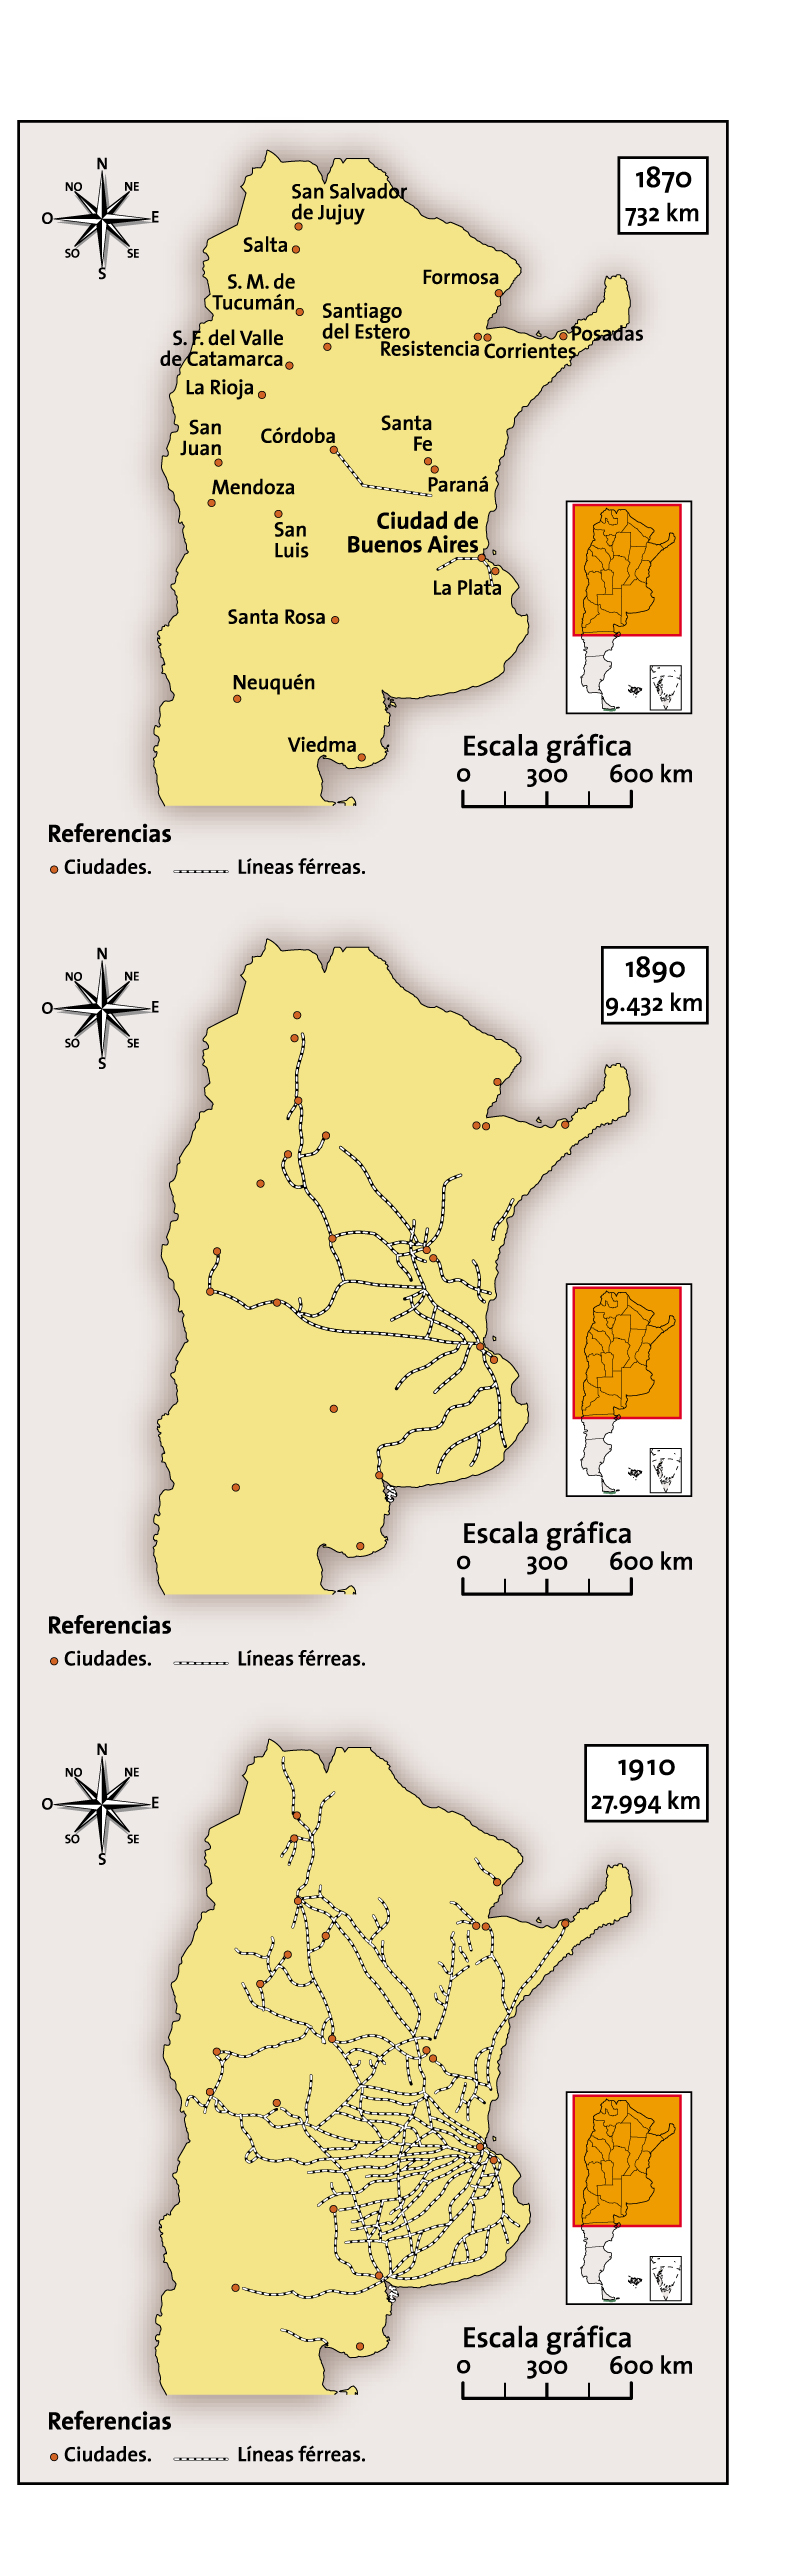 Expansión de los ferrocarriles en la Argentina